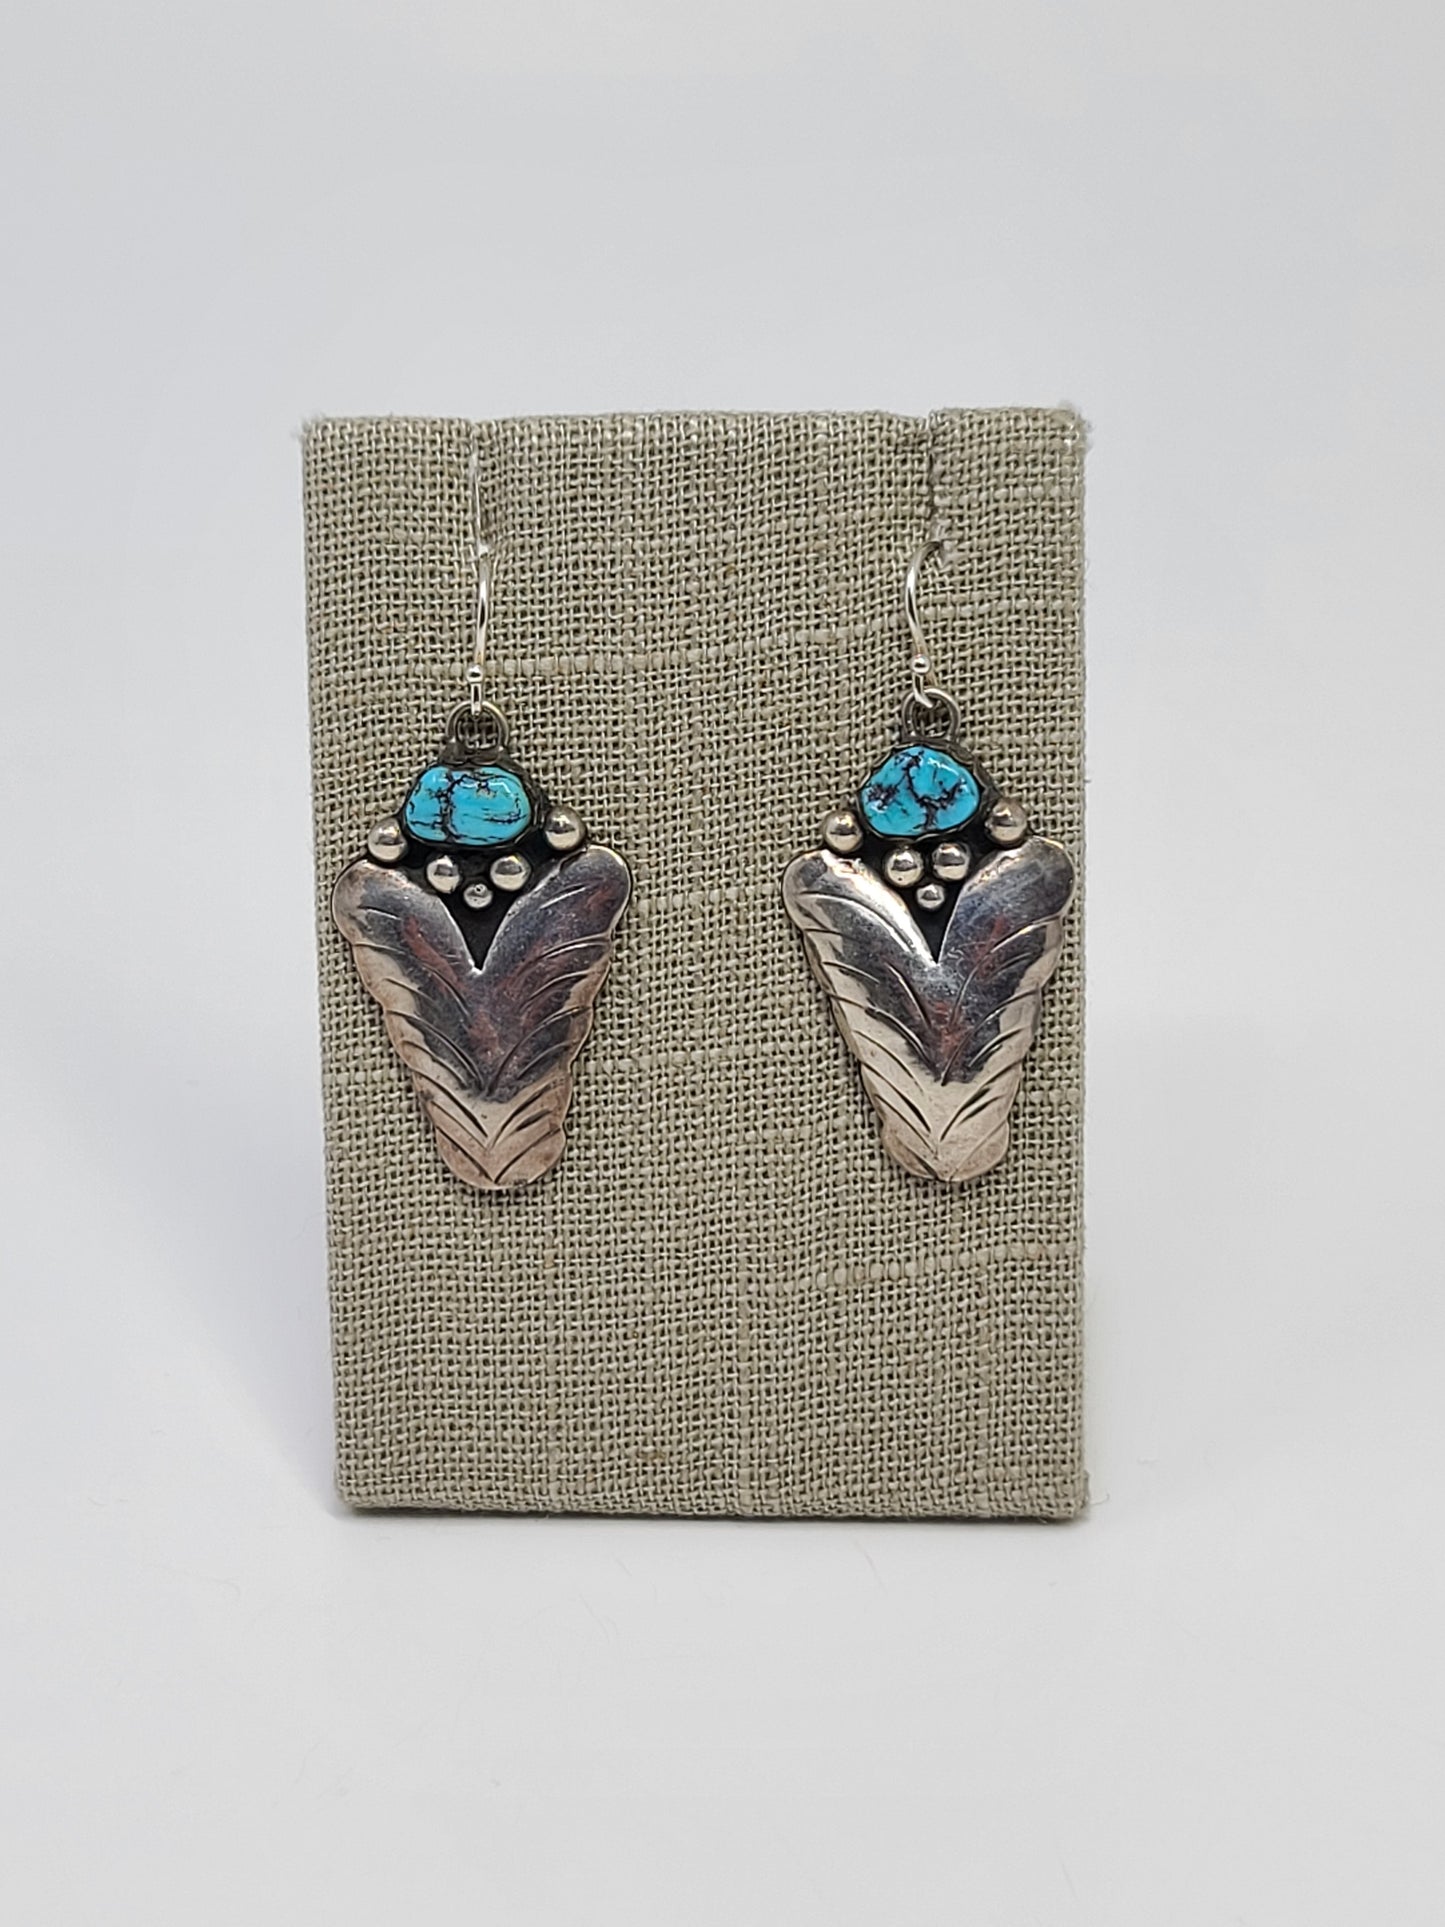 Kingman Turquoise Dangle Earrings